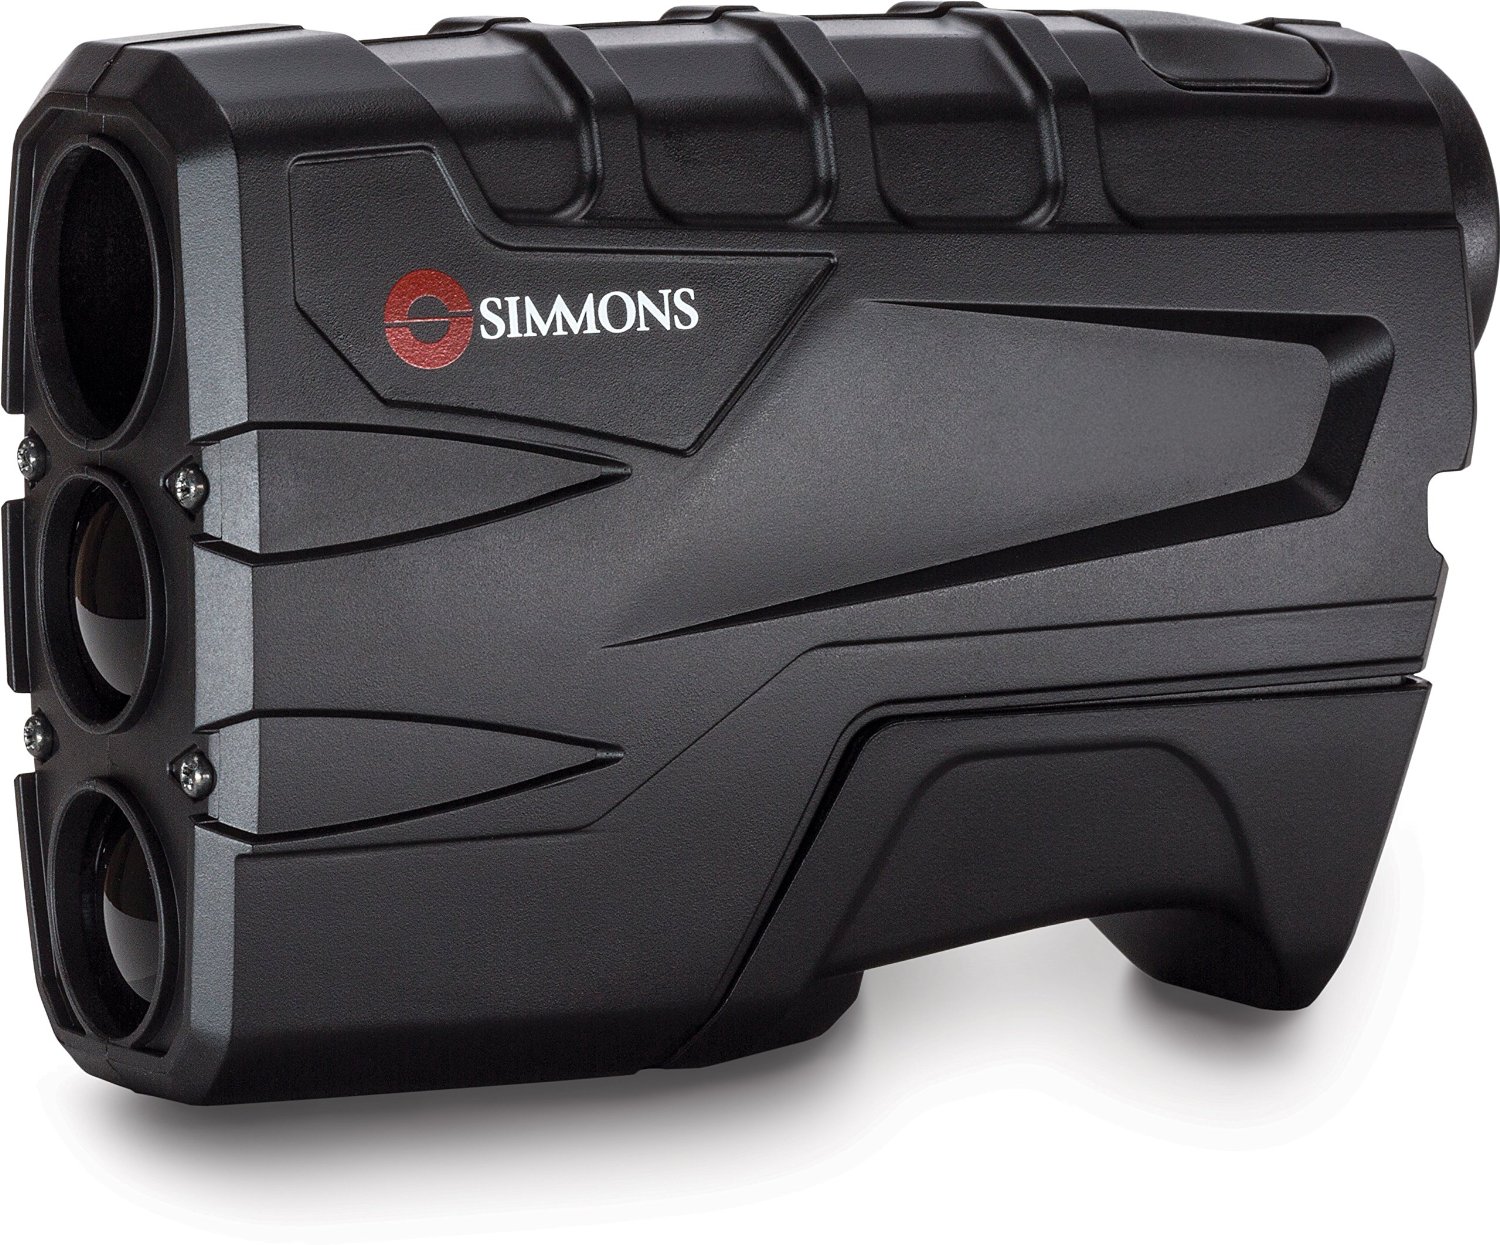 Save on the Simmons Volt 600 Laser Rangefinder – Just $59.99!